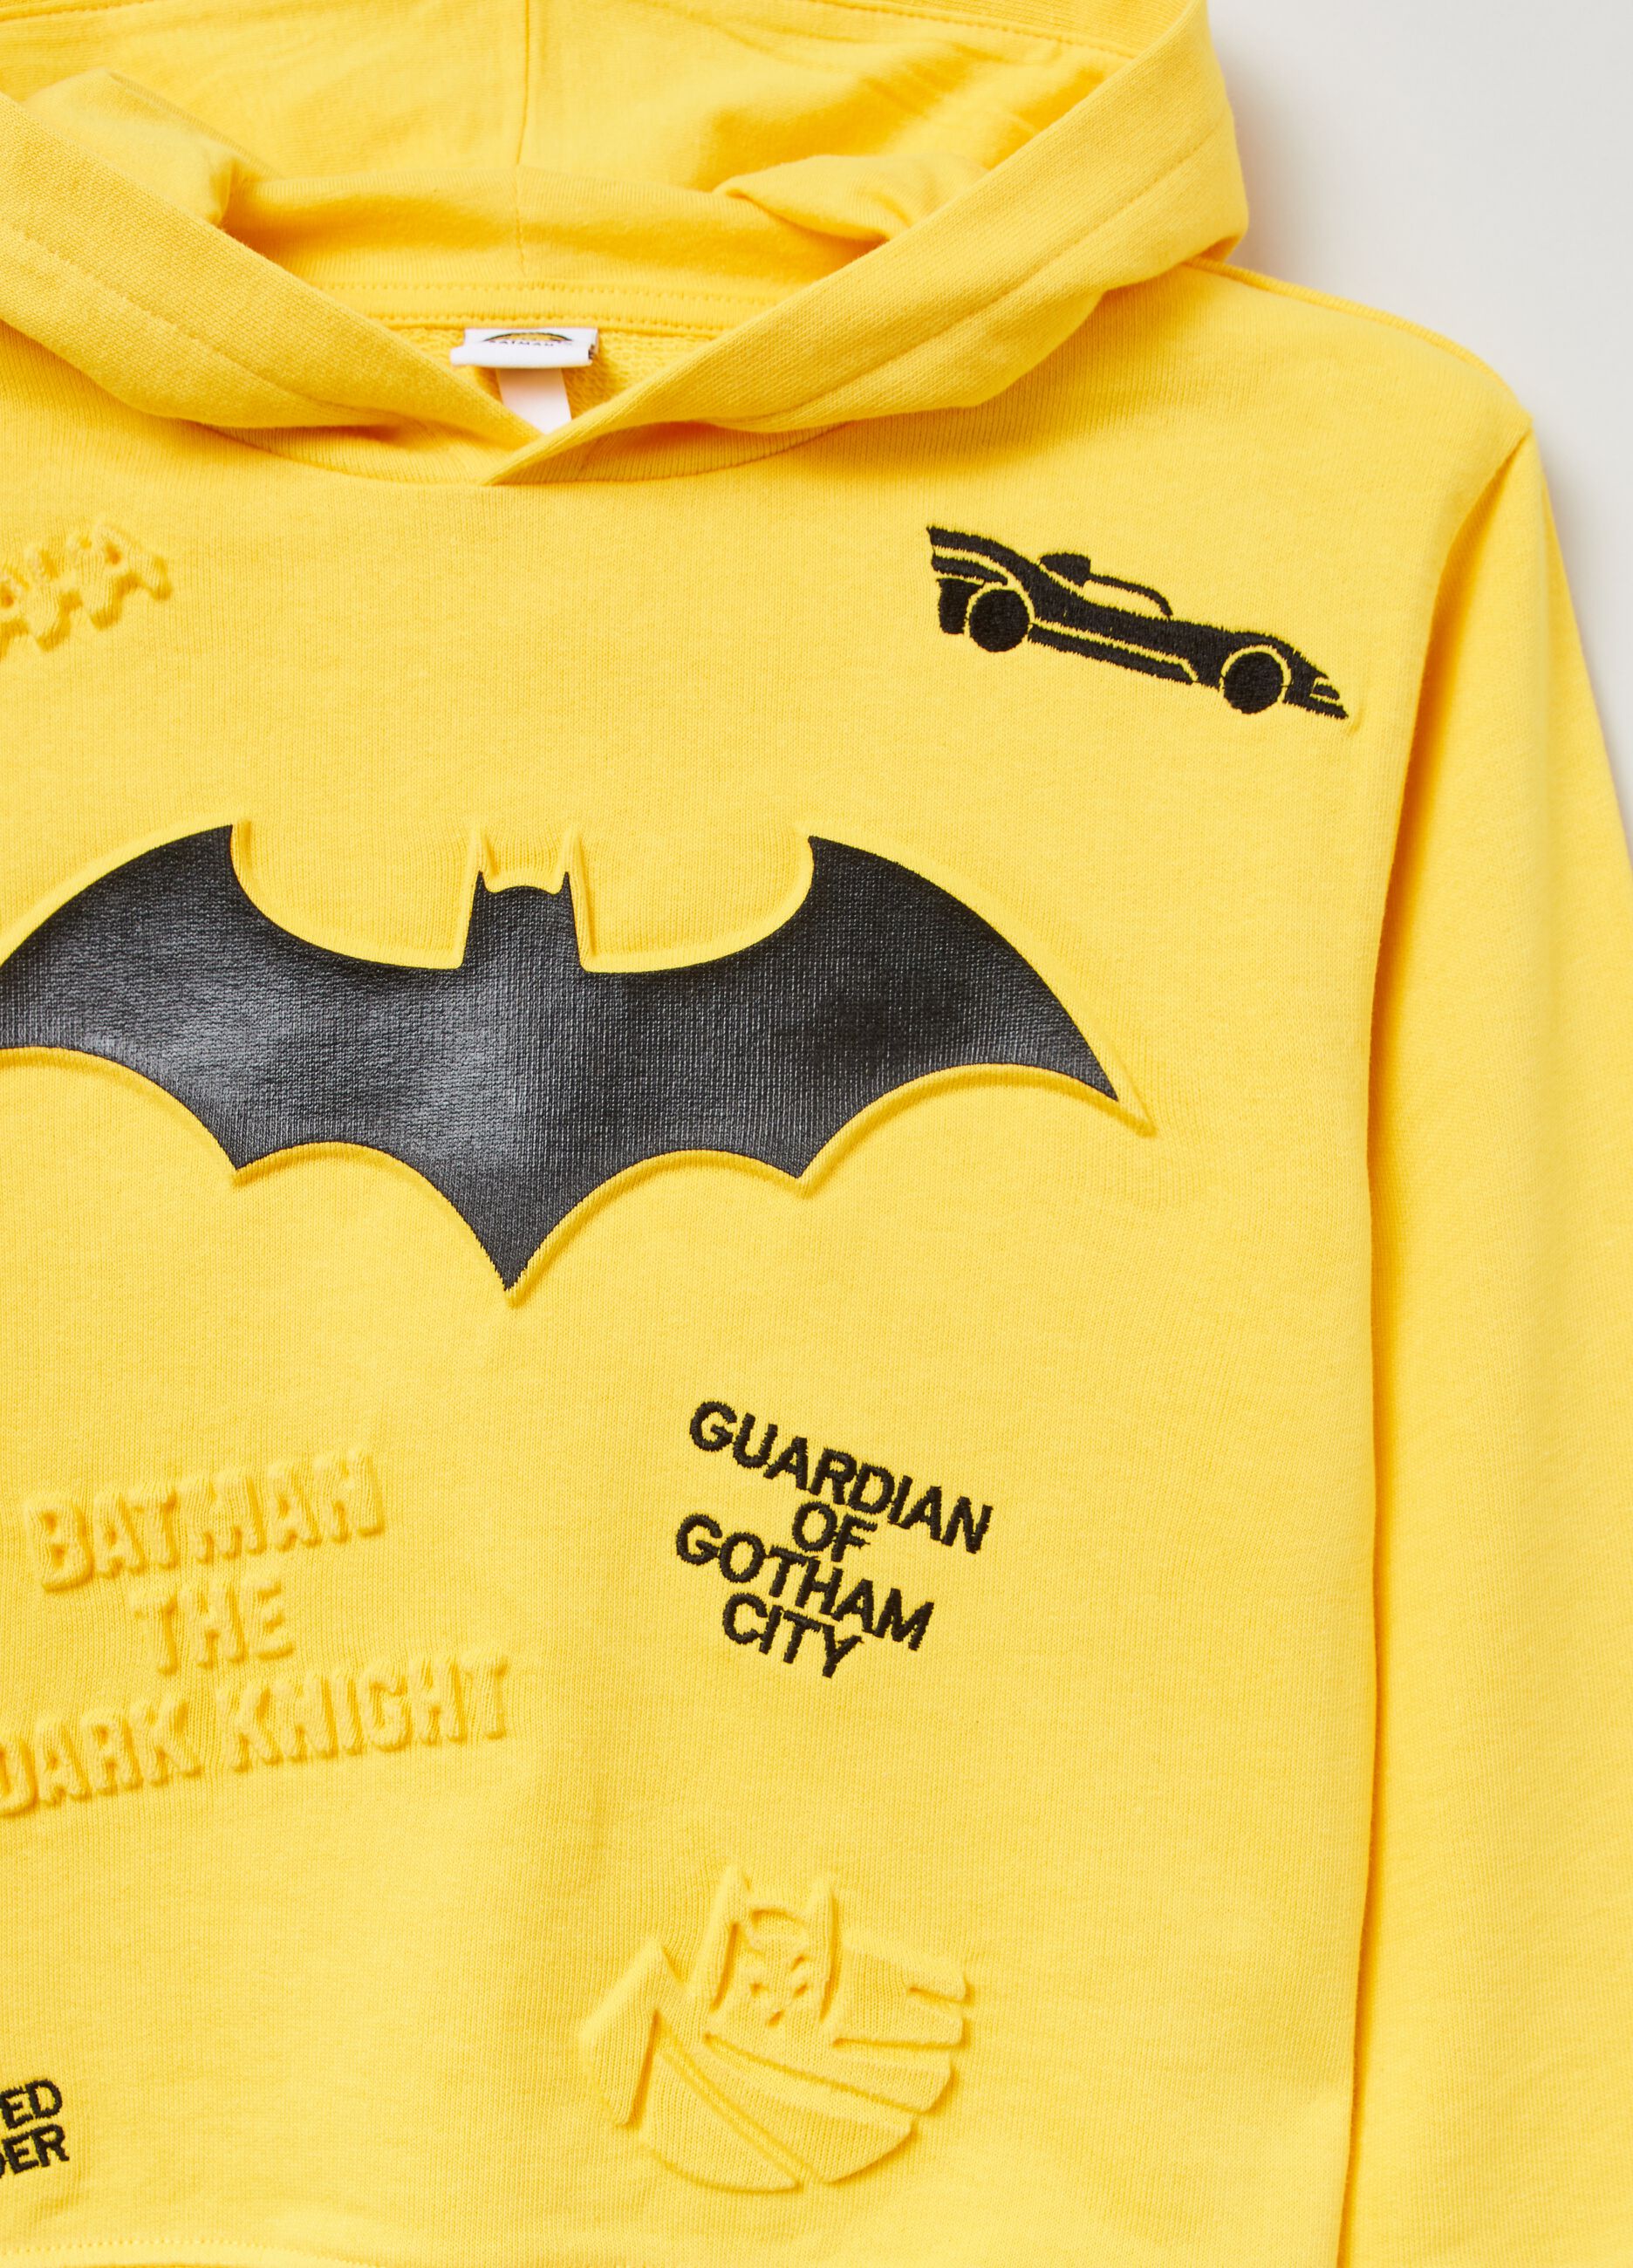 Warner Bros Batman hoodie